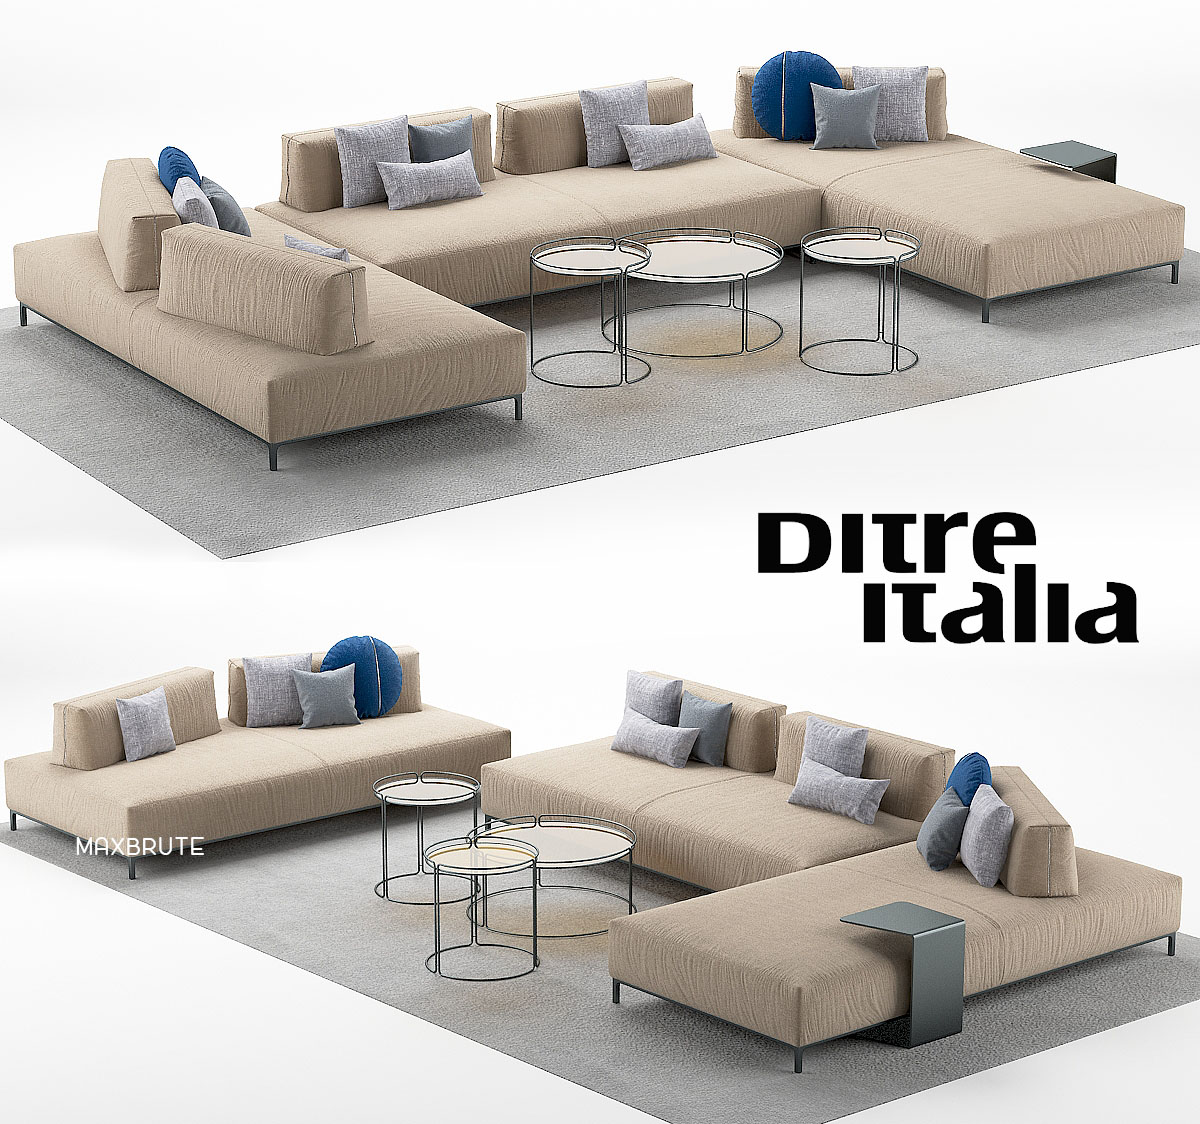 3dSkyHost: Ditre italia Sanders sofa 3dsmax 3dmodel